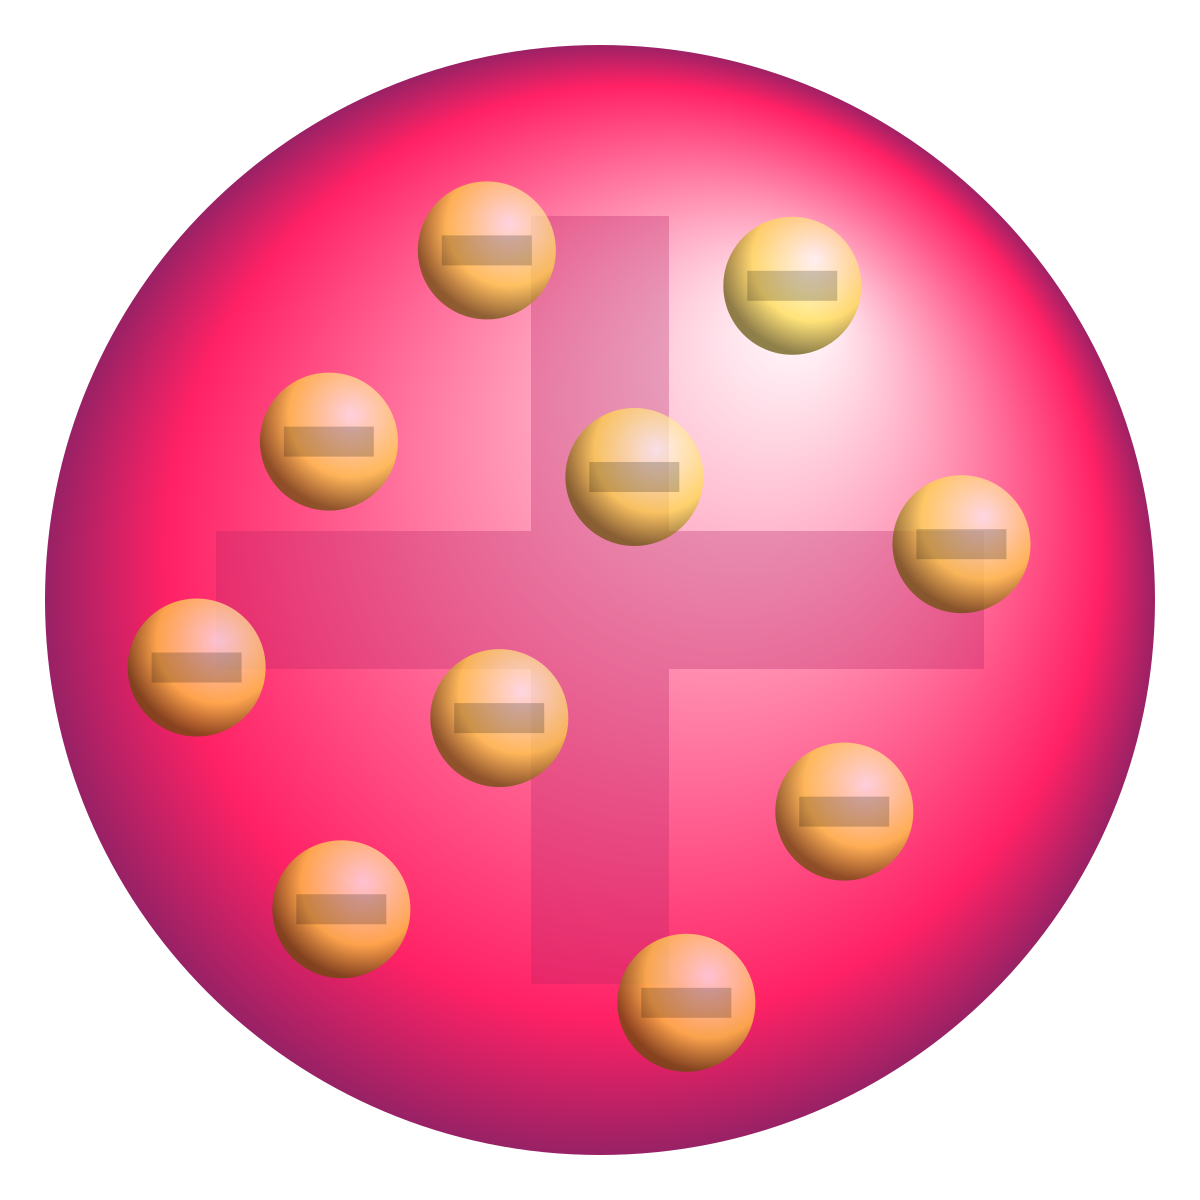 النماذج للذرة اي دالتون الذرة الآتية توضح نموذج نظرية العالم